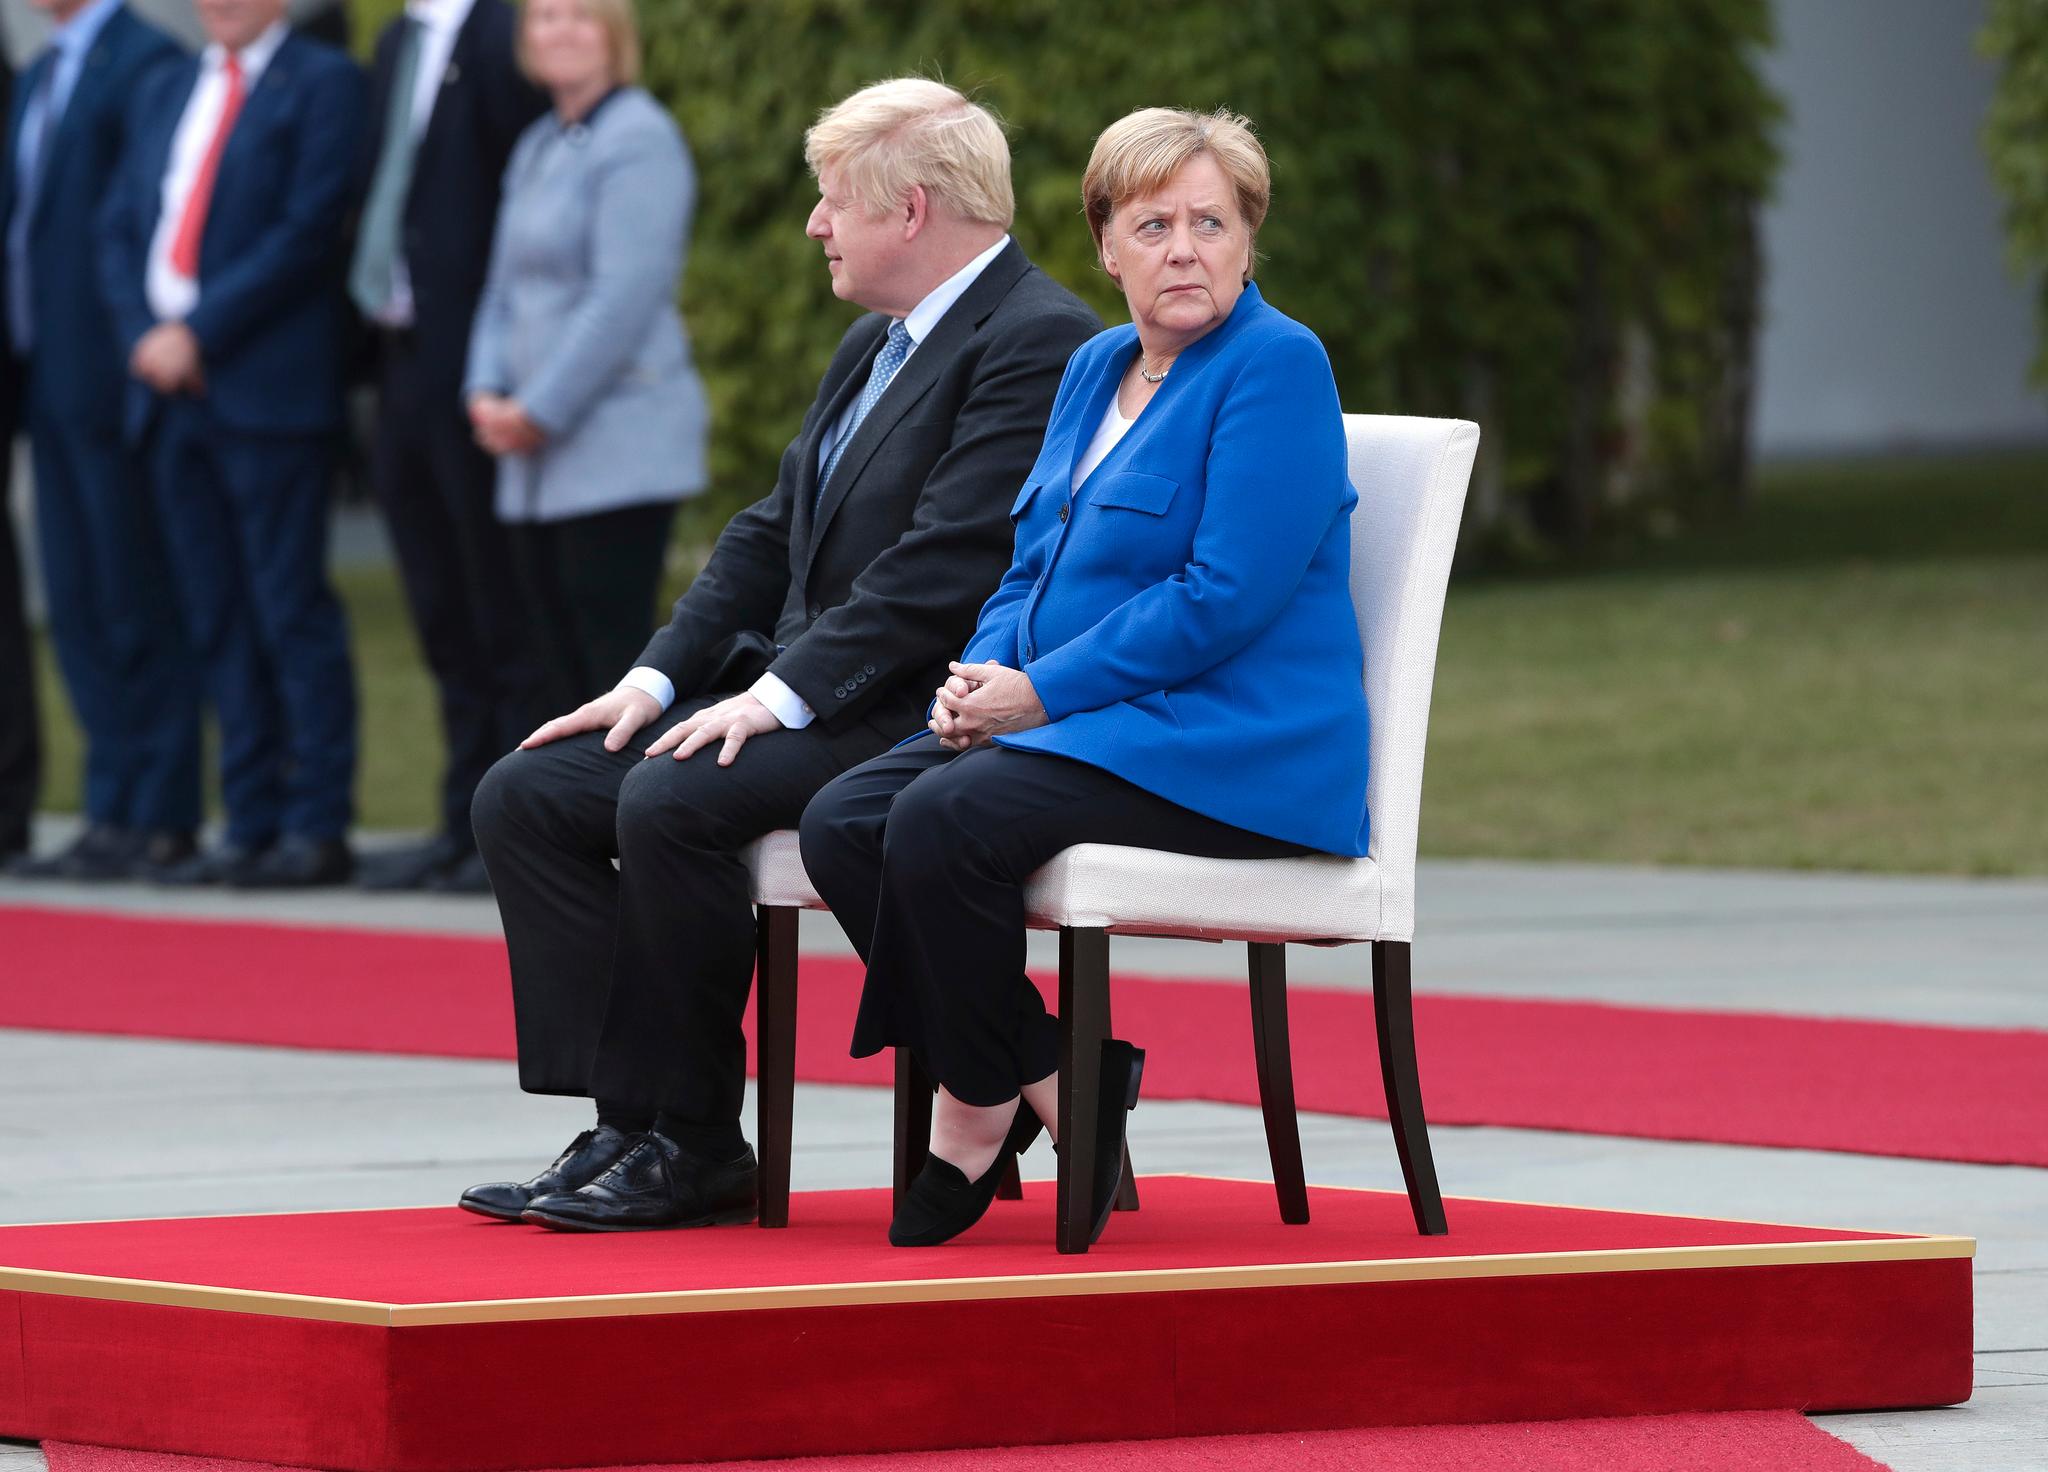 Varmt og hjertelig var det ikke da Boris Johnson og Angela Merkel møttes. Tonen var vennlig, men innholdet like uforsonlig som før.